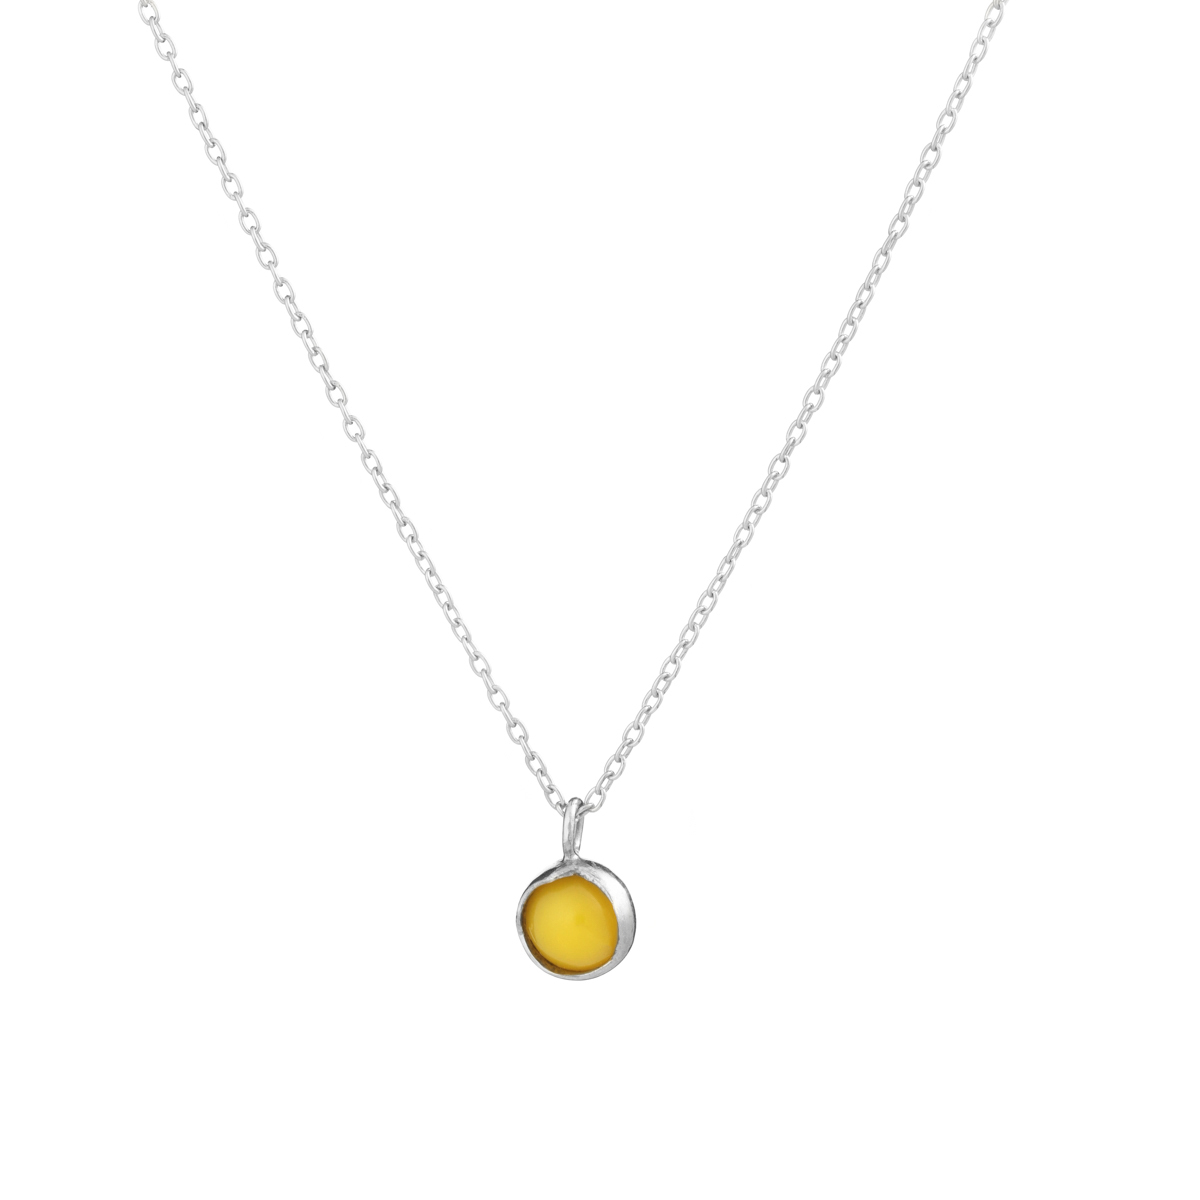 Elegant yellow pendant